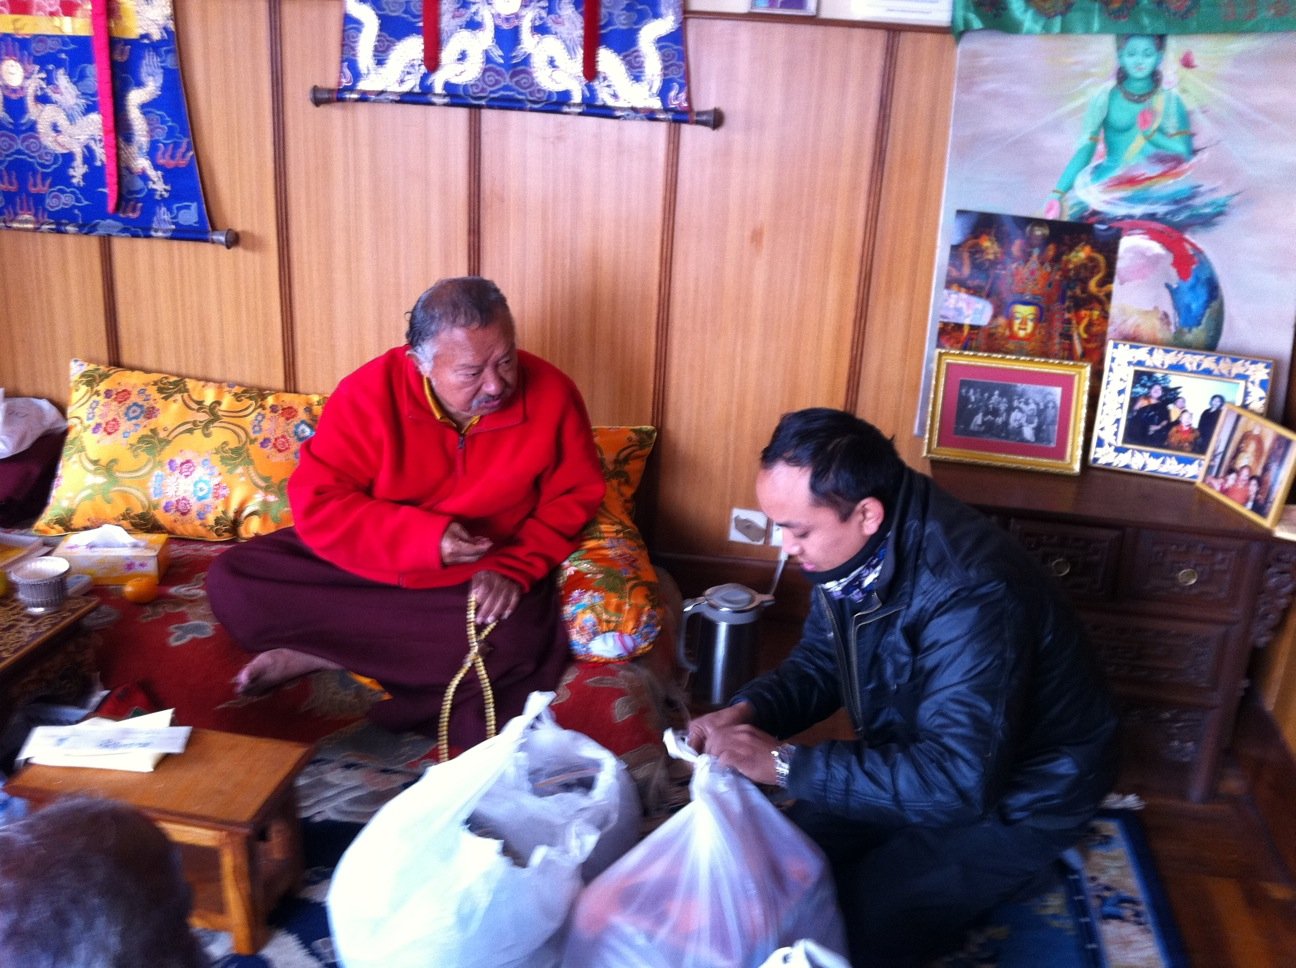 Chokling Rinpoche megáldja a termékeket